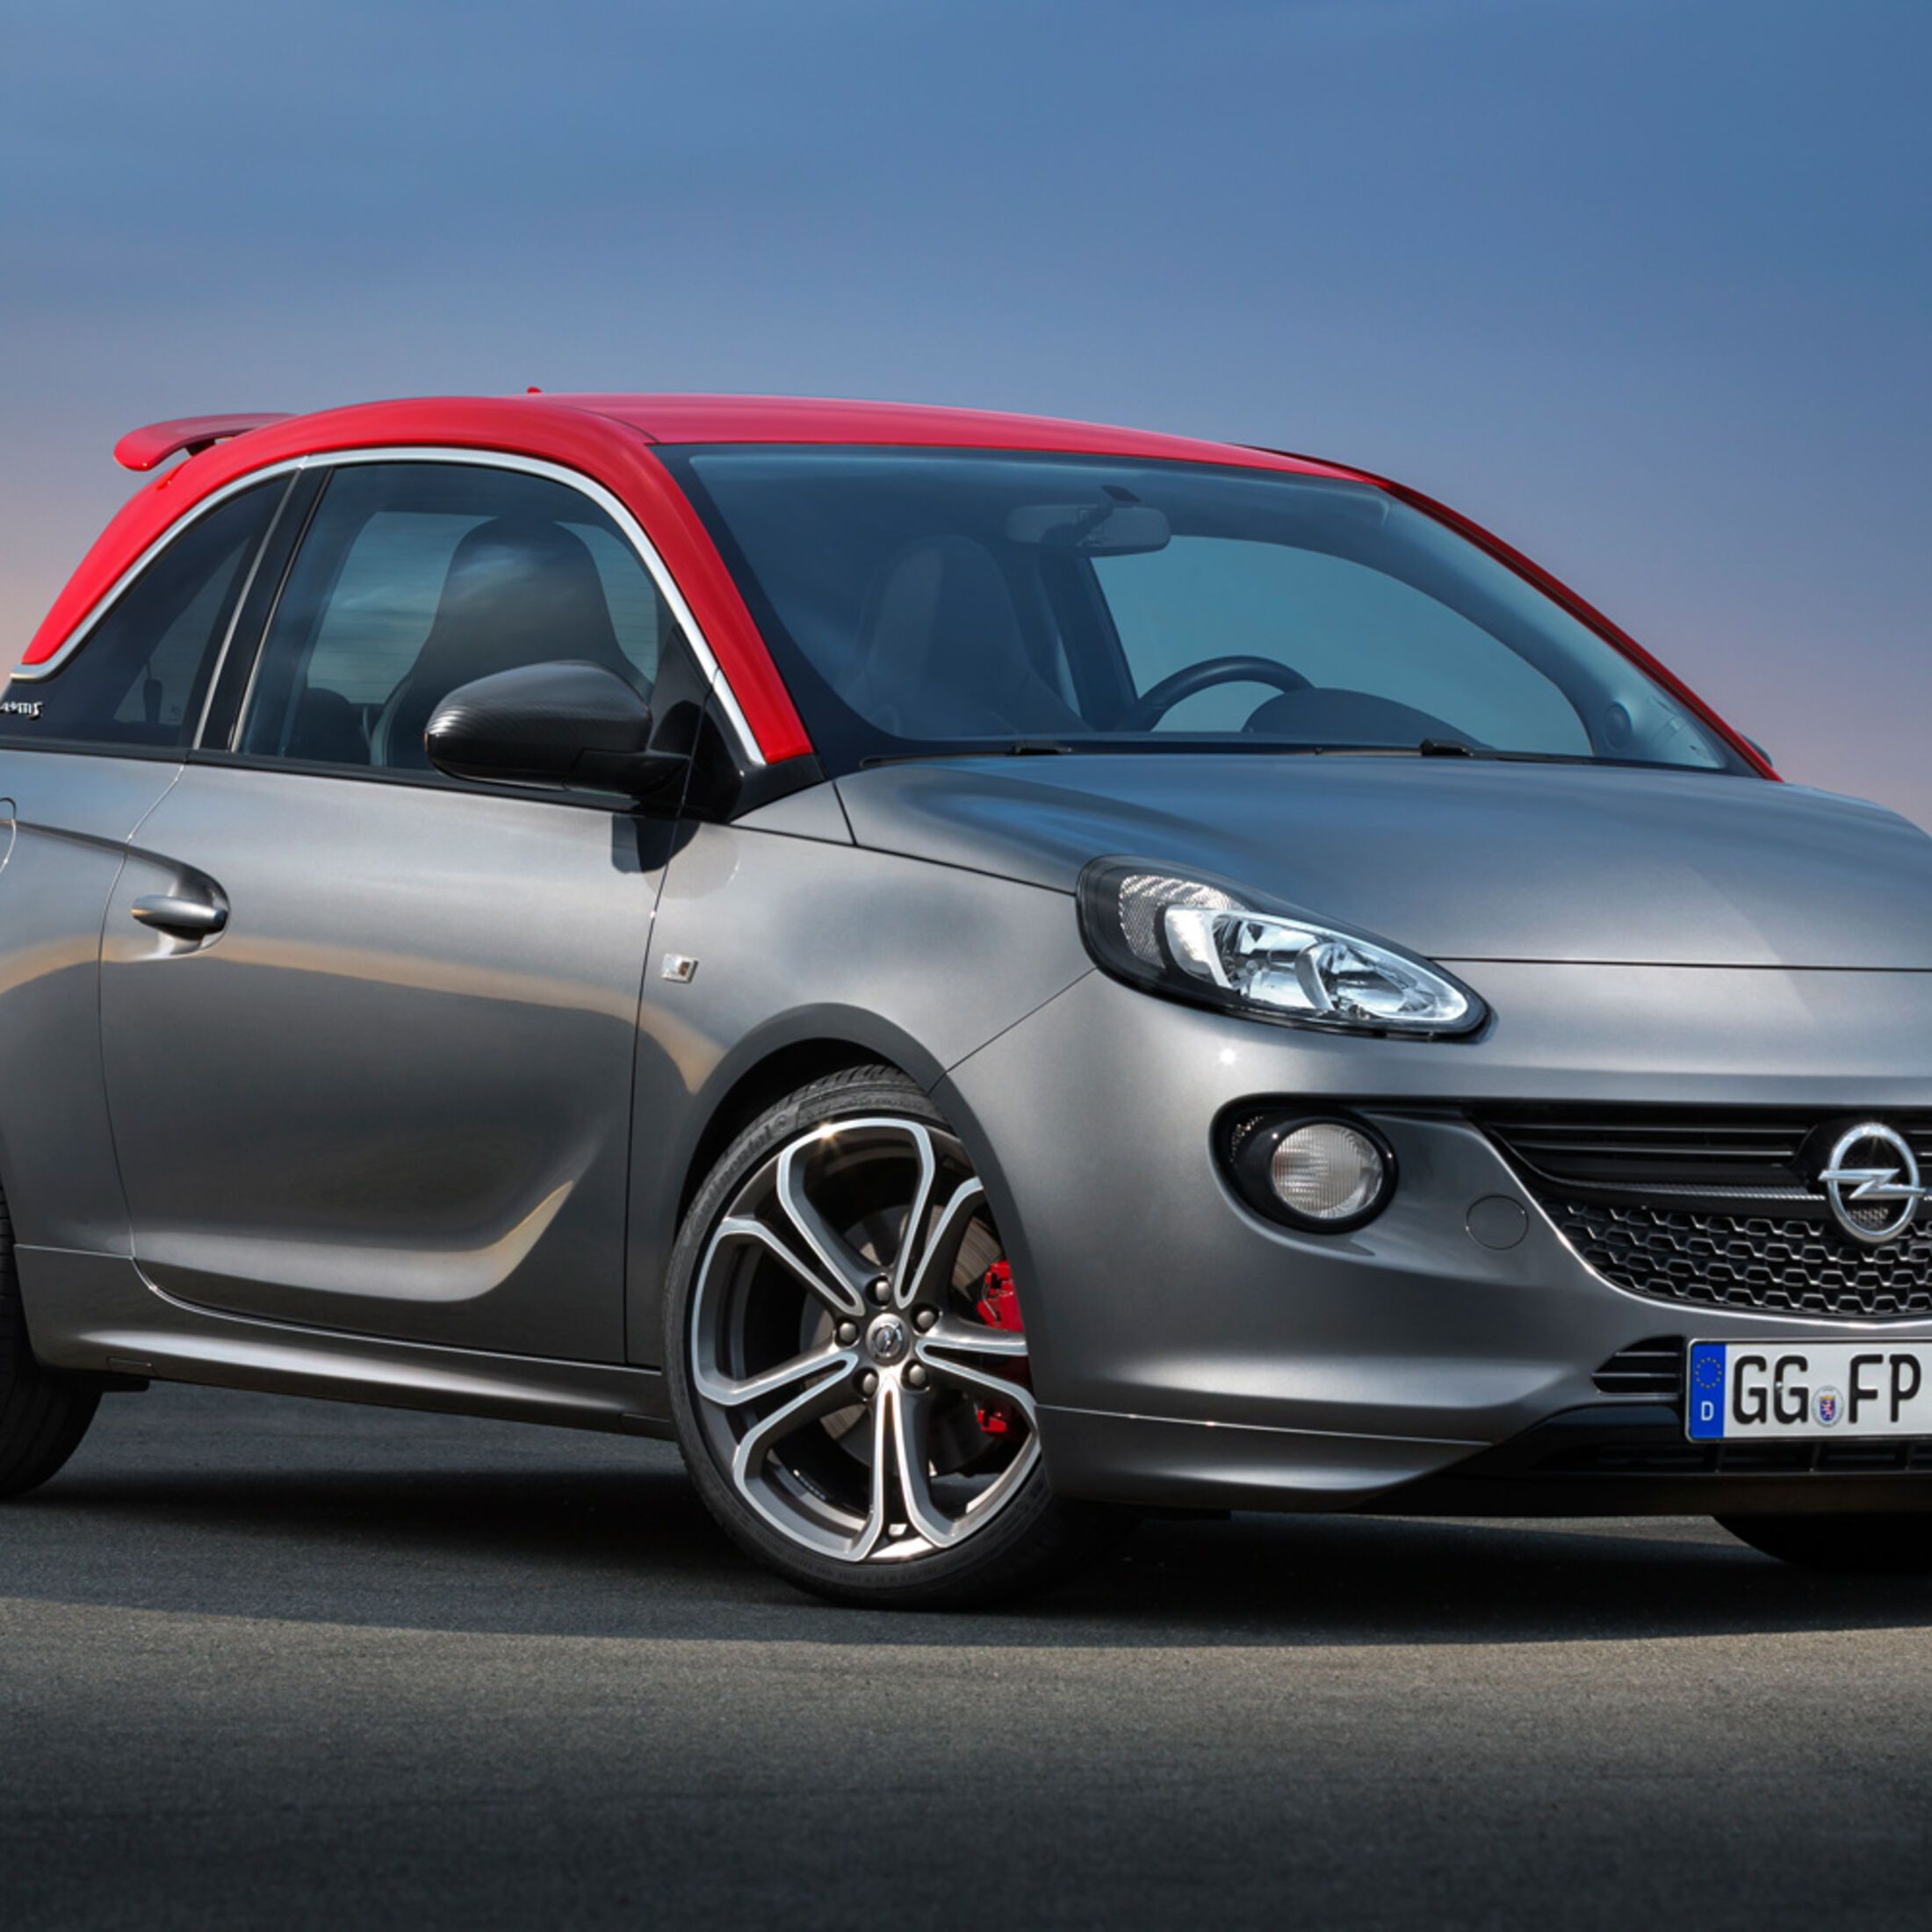  Opel Hintergrundbild 2200x2200. Autonis 2015 Gesamtergebnis. AUTO MOTOR UND SPORT